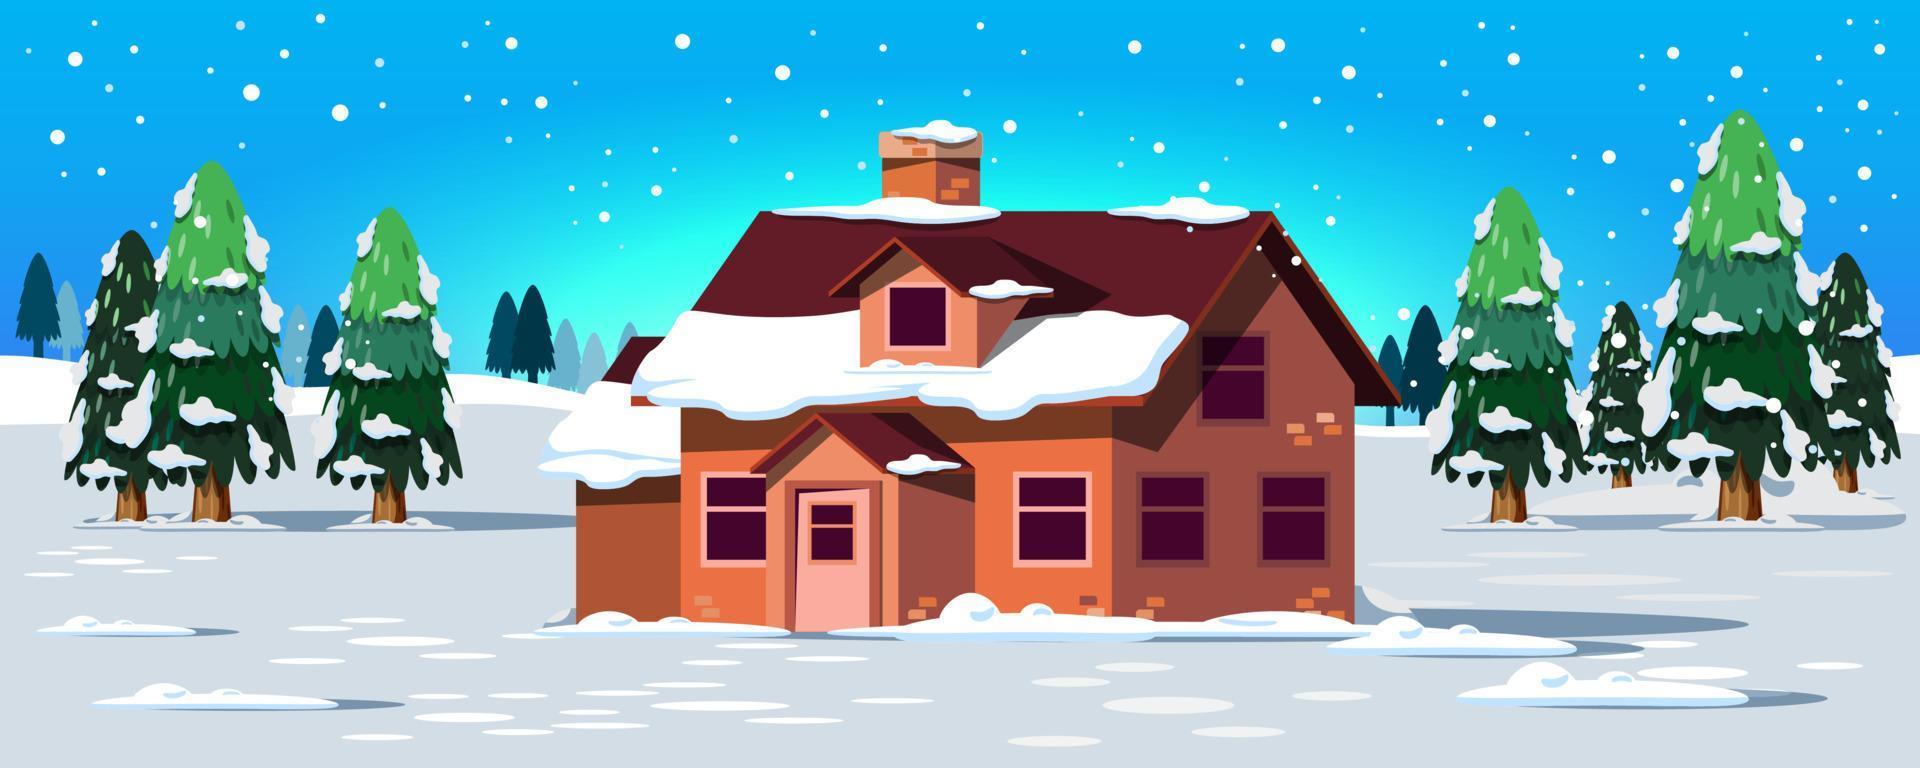 la scena rustica di una casa in una pineta sta nevicando. la neve cade in uno scenario. vettore